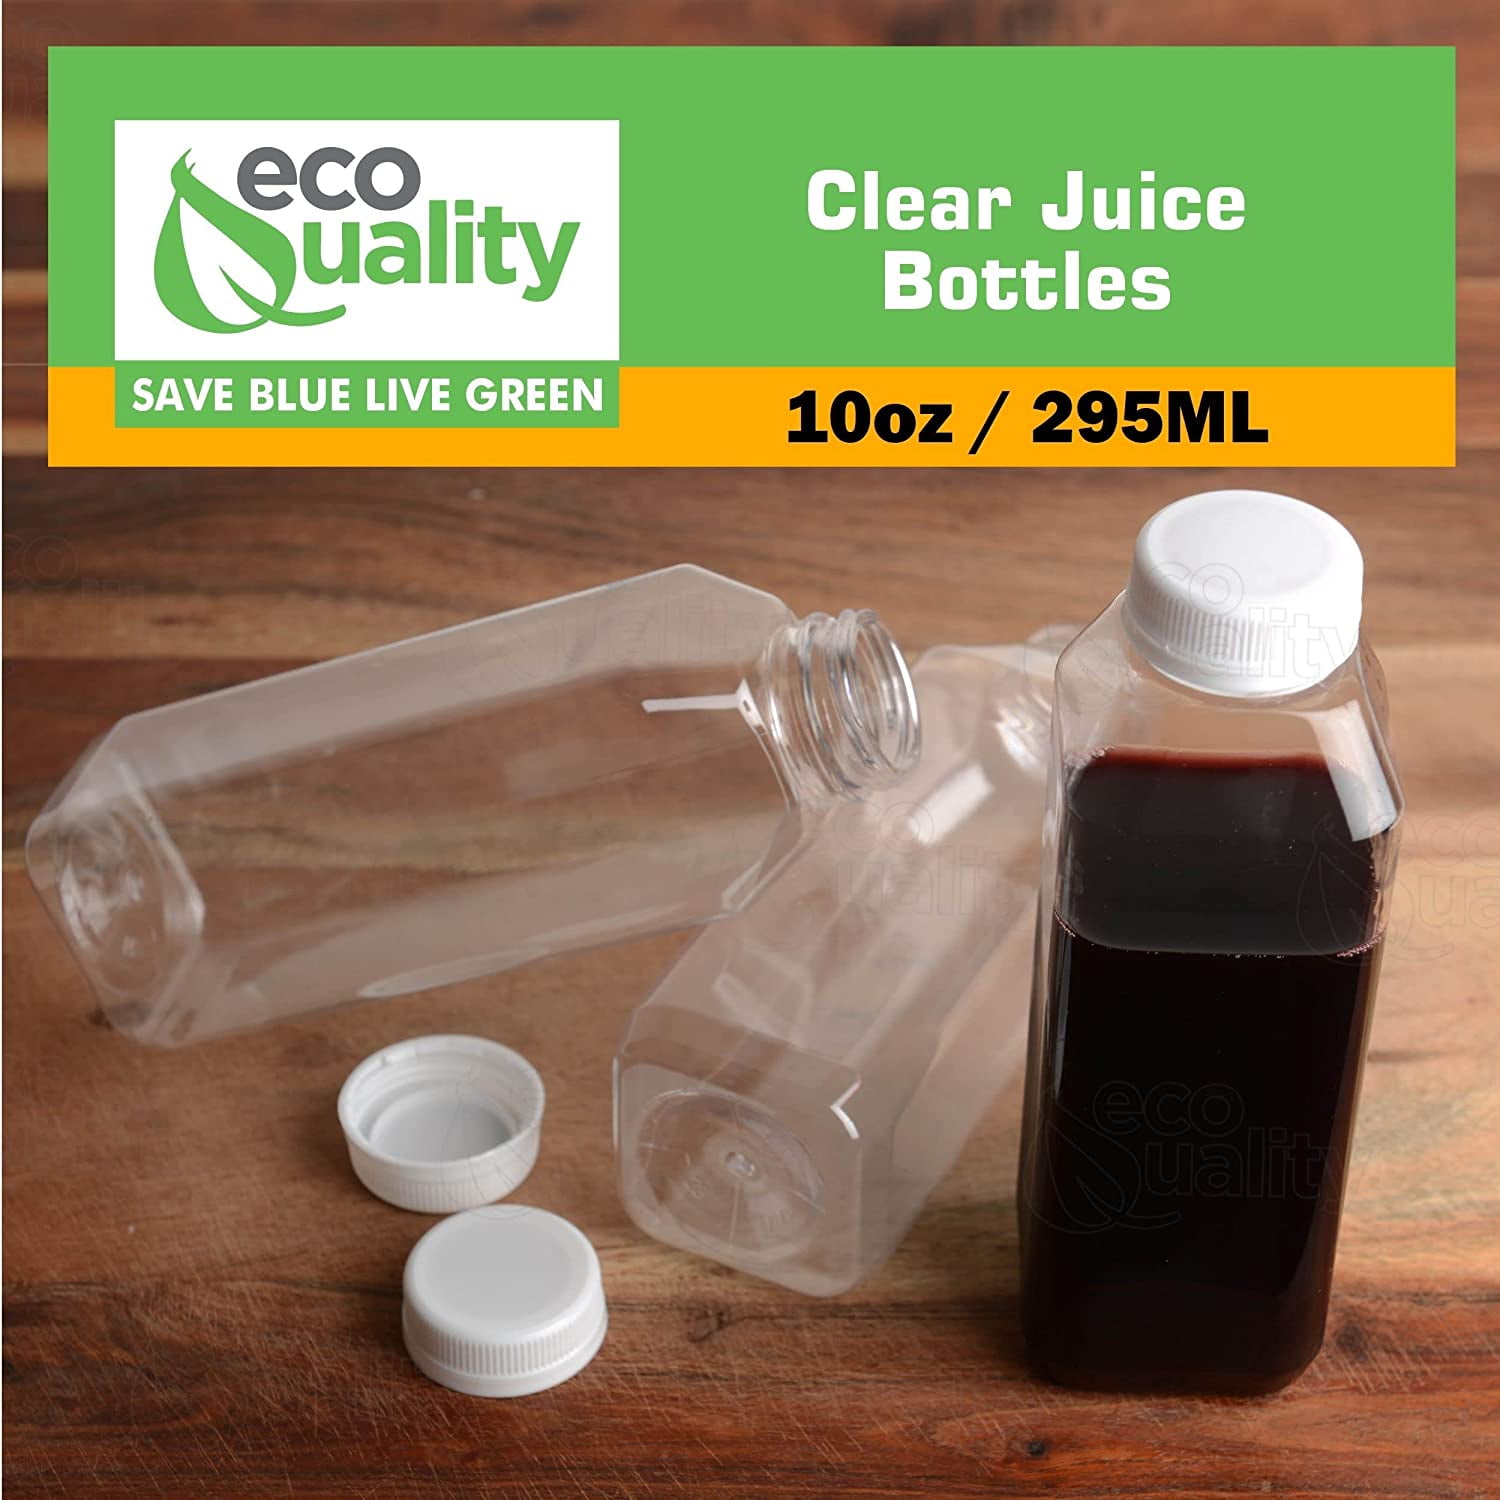 5pcs Plastic Juice Bottles, Clear Bulk Beverage Container, Leak